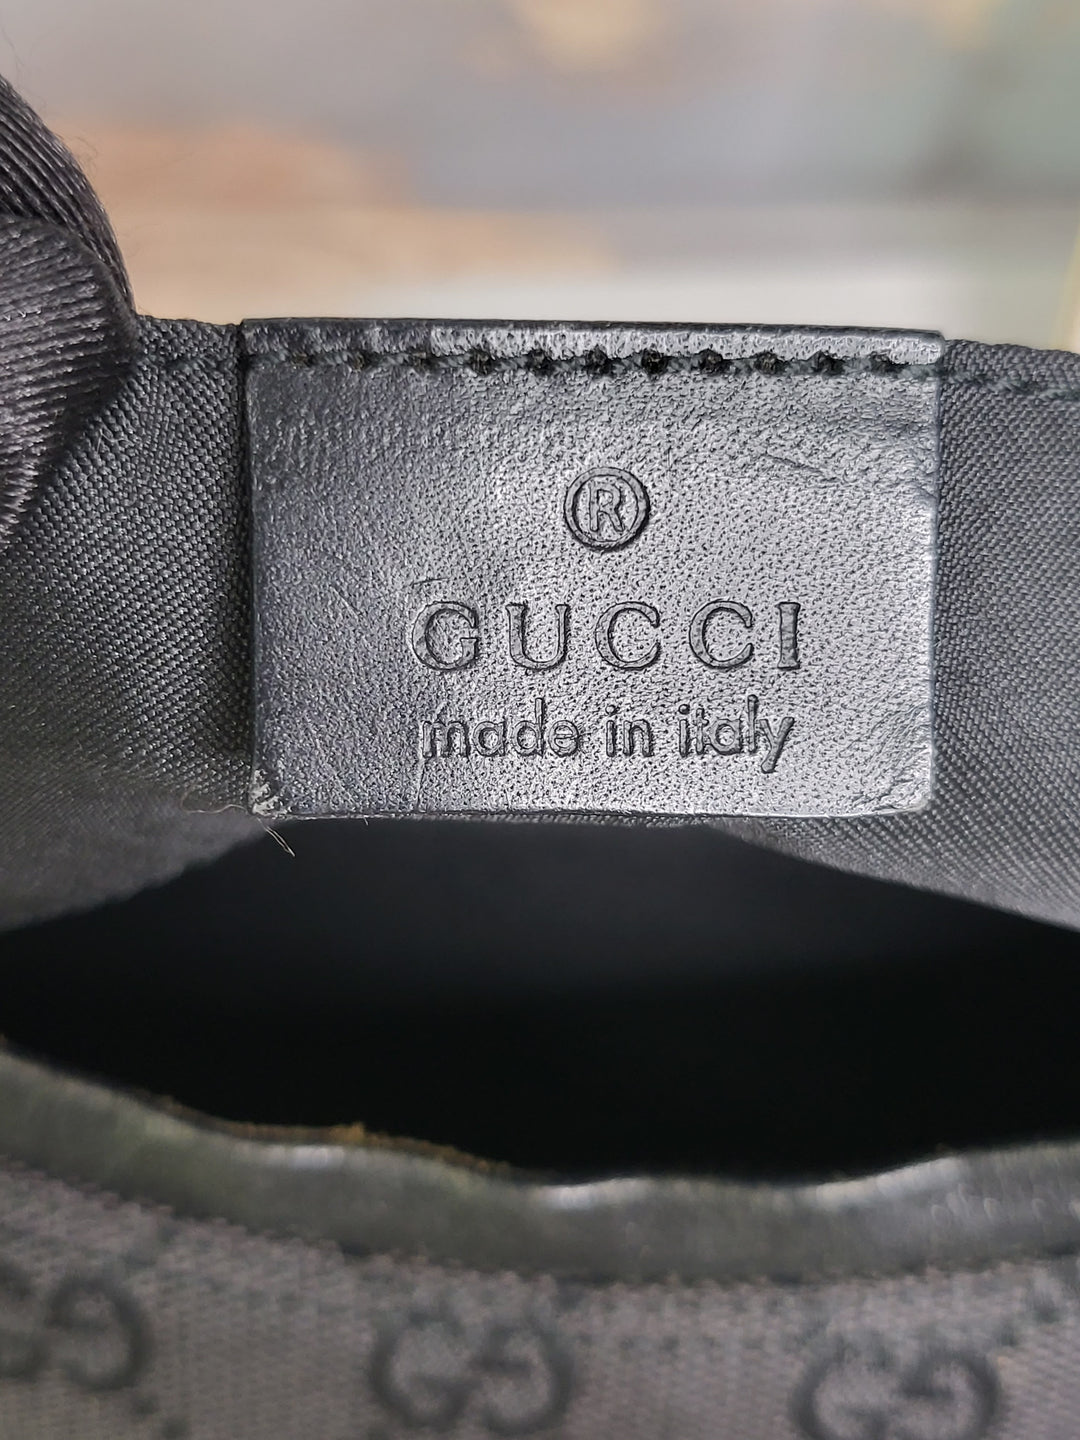 Gucci Canvas Medium Hobo Shoulder Bag